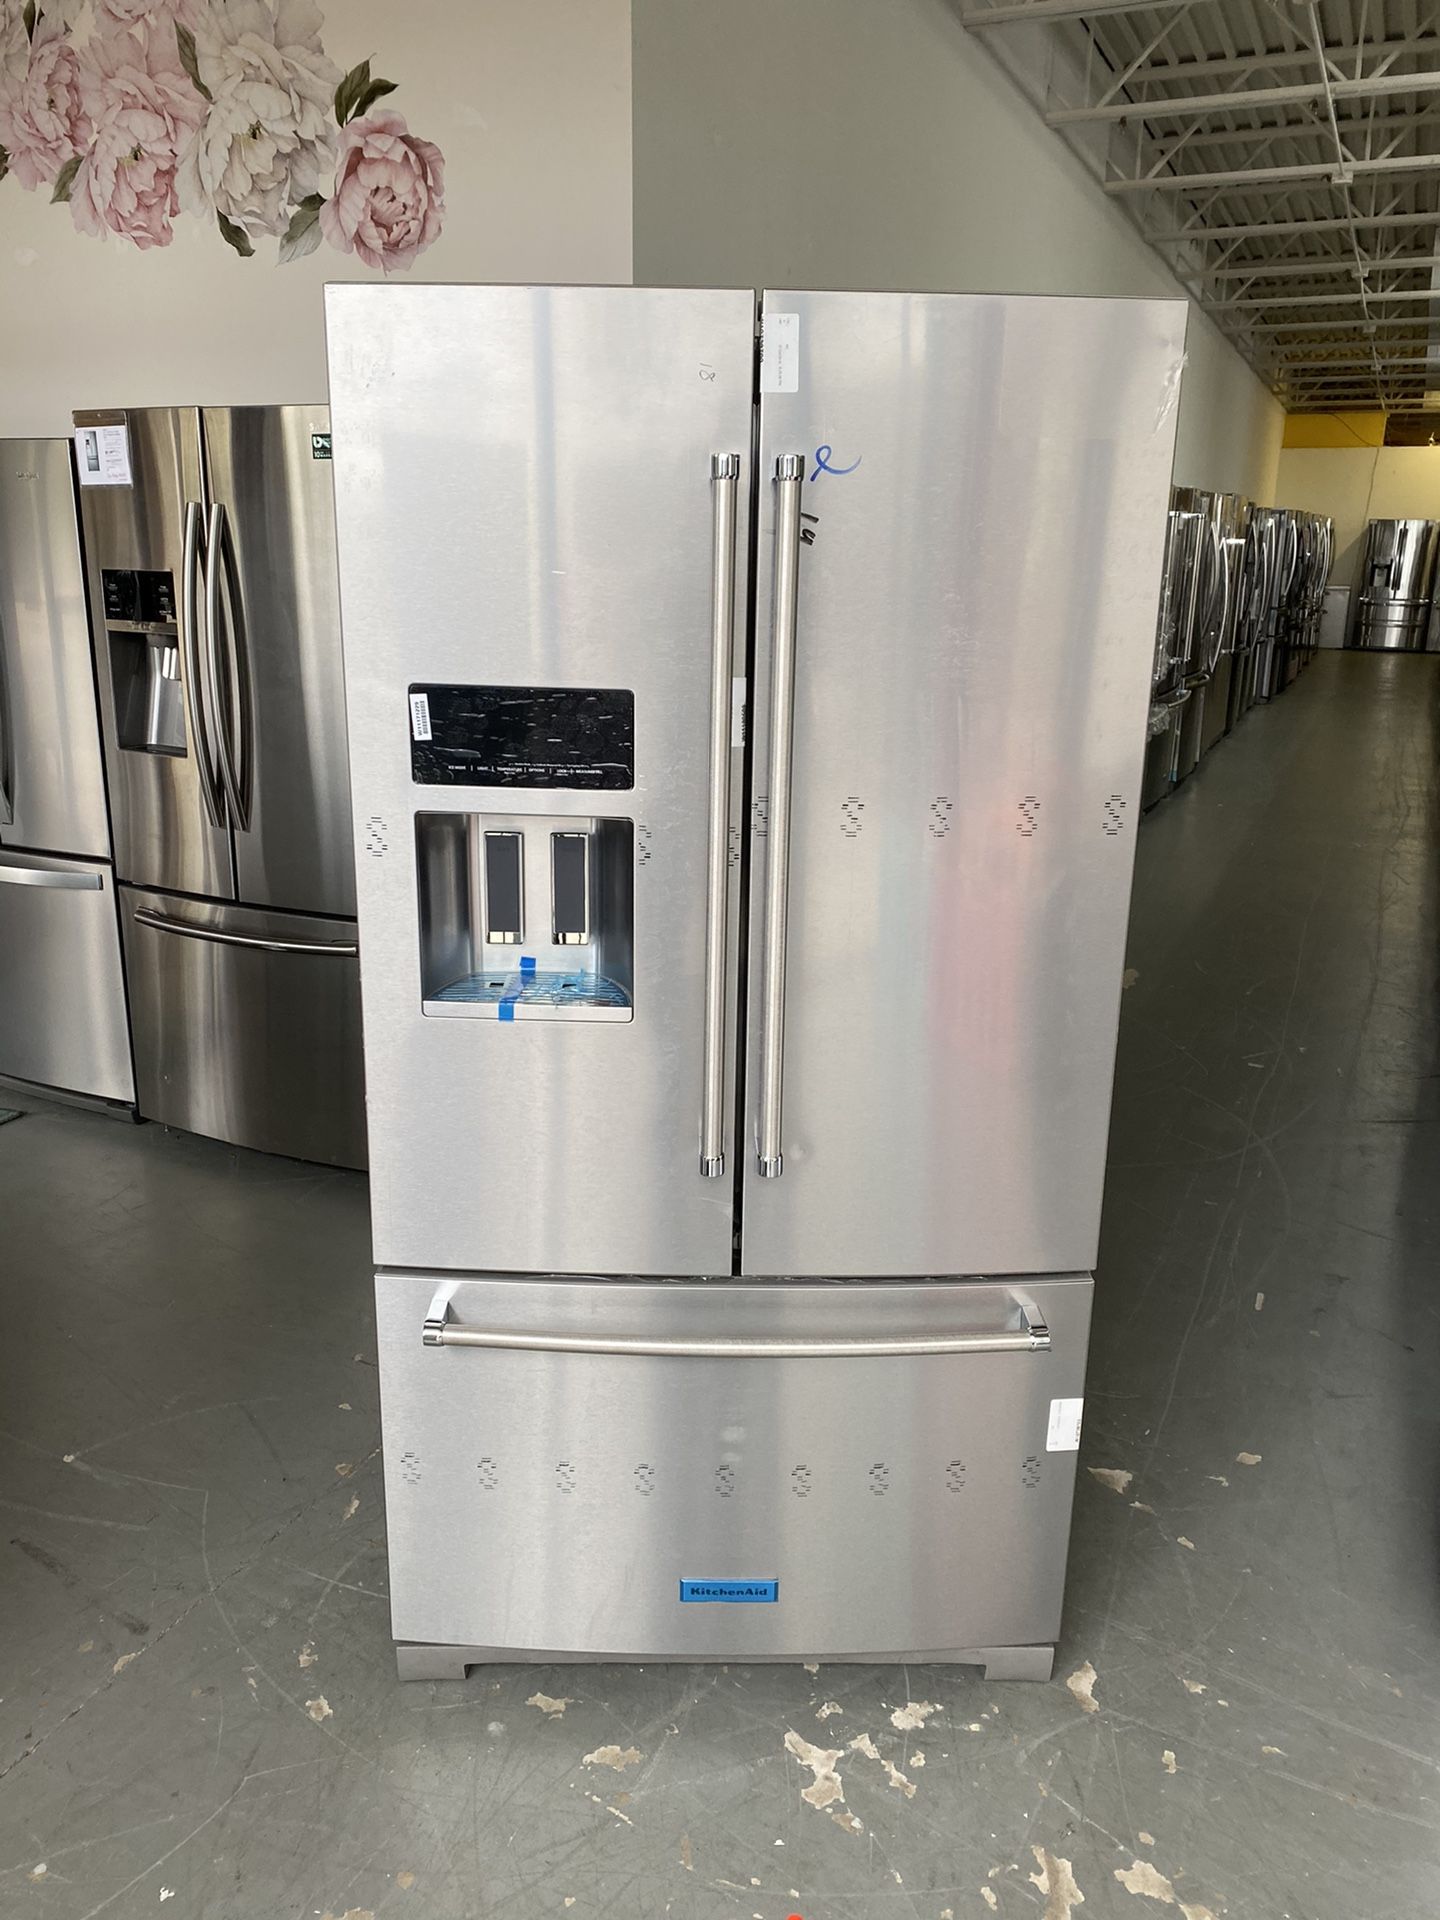 NEW KitchenAid 36" PrintShield Stainless Steel French Door Refrigerator - KRFF507HPS